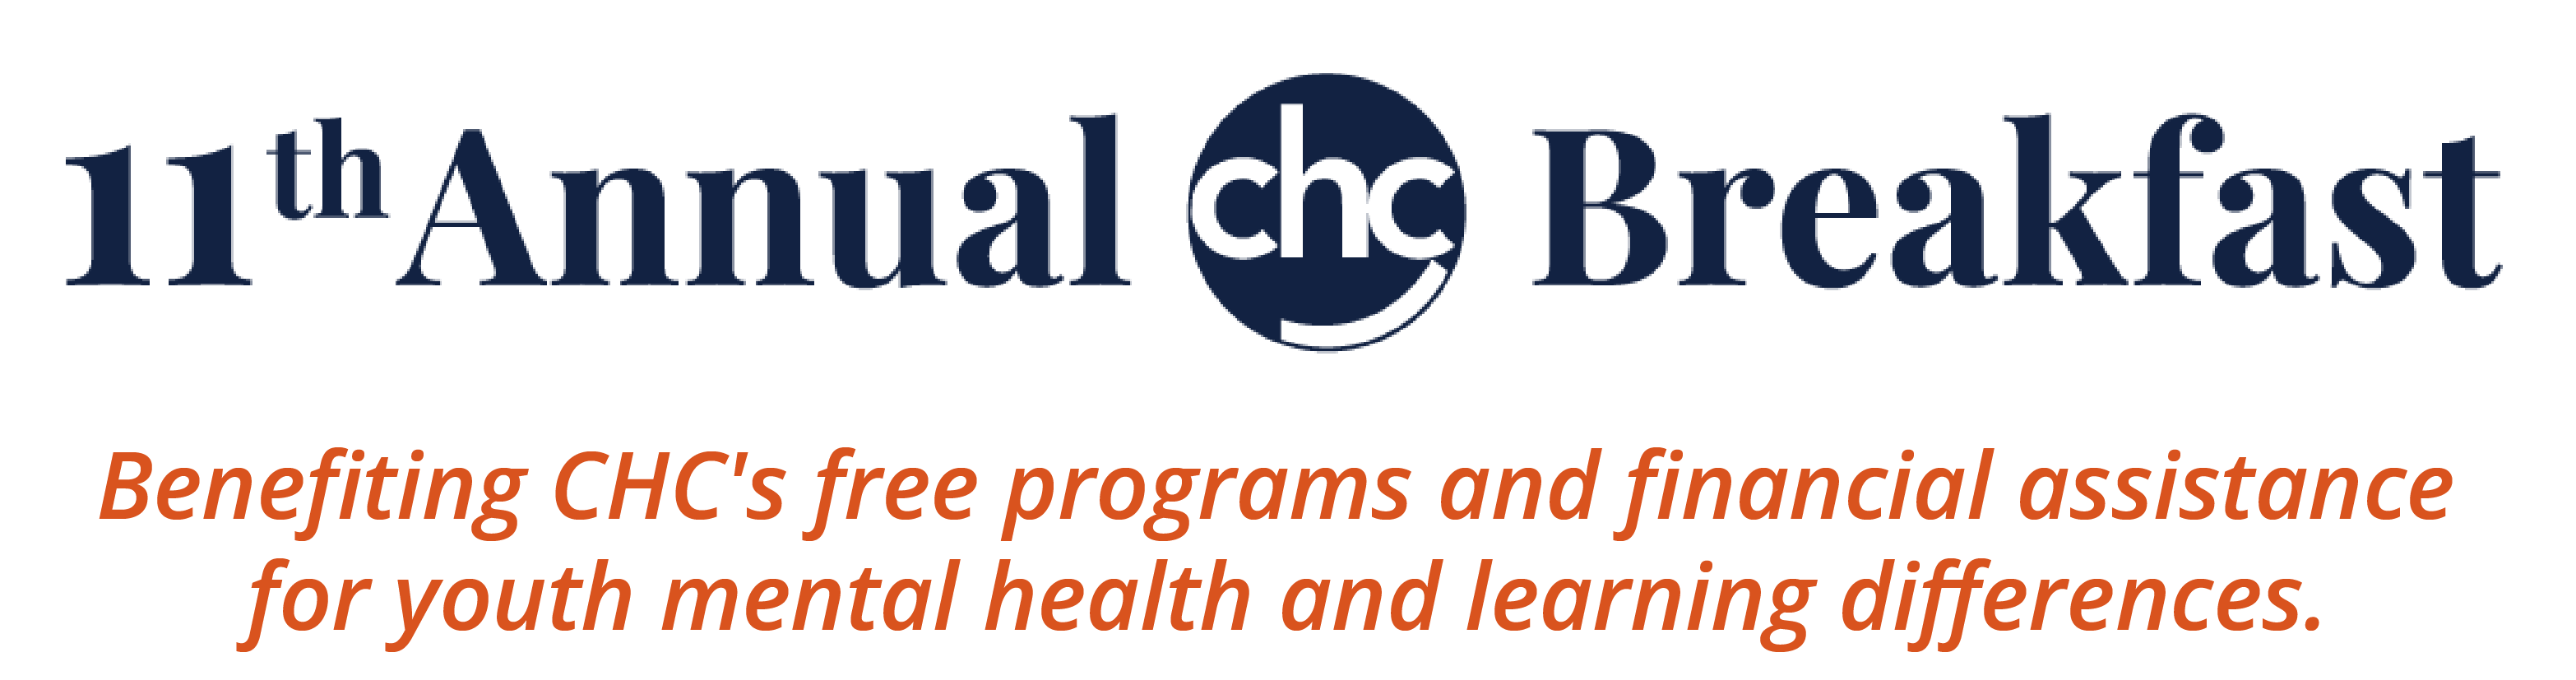 11th Annual CHC Breakfast logo